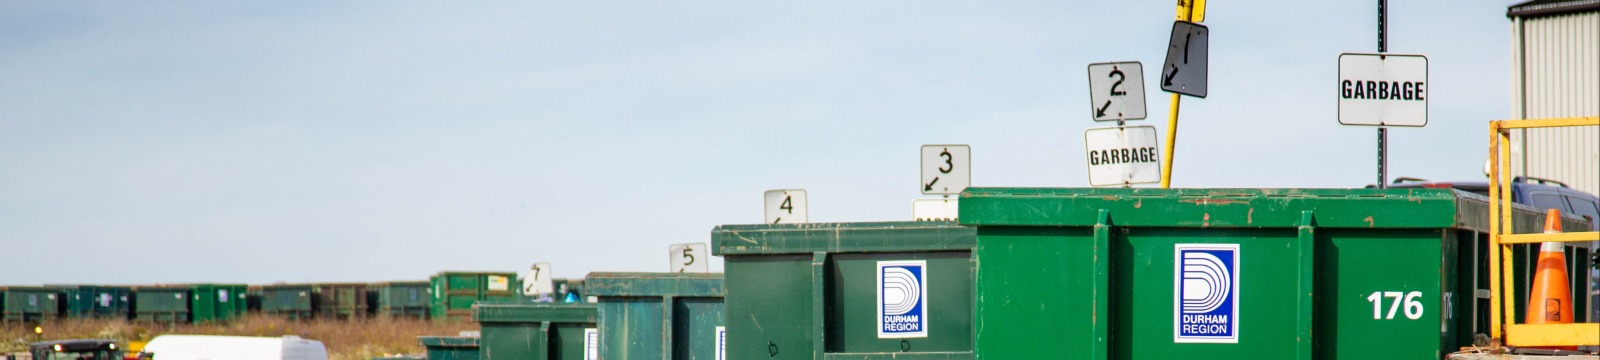 waste bins at the Durham Region Waste Management Facility